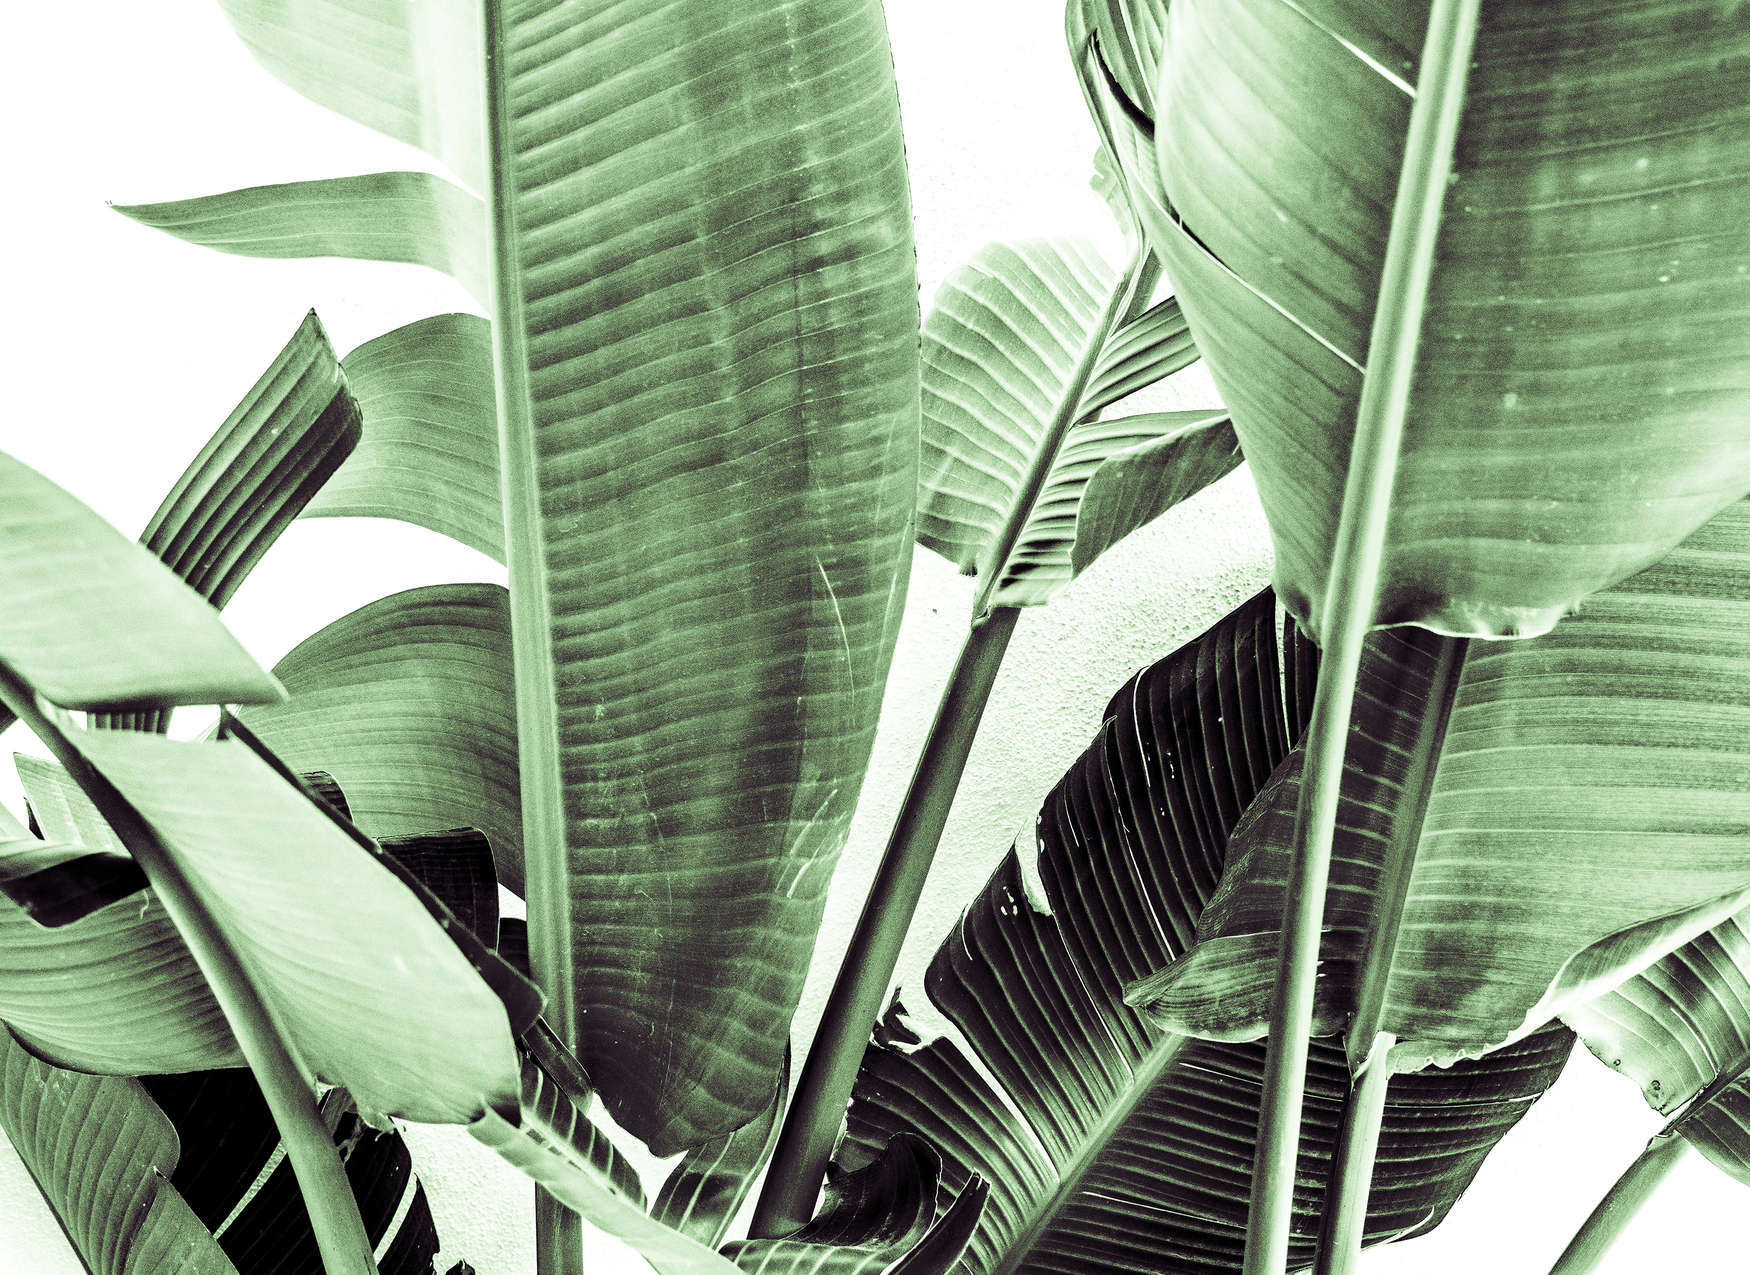             Palm Leaf Detail Onderlaag behang - Groen, Wit
        